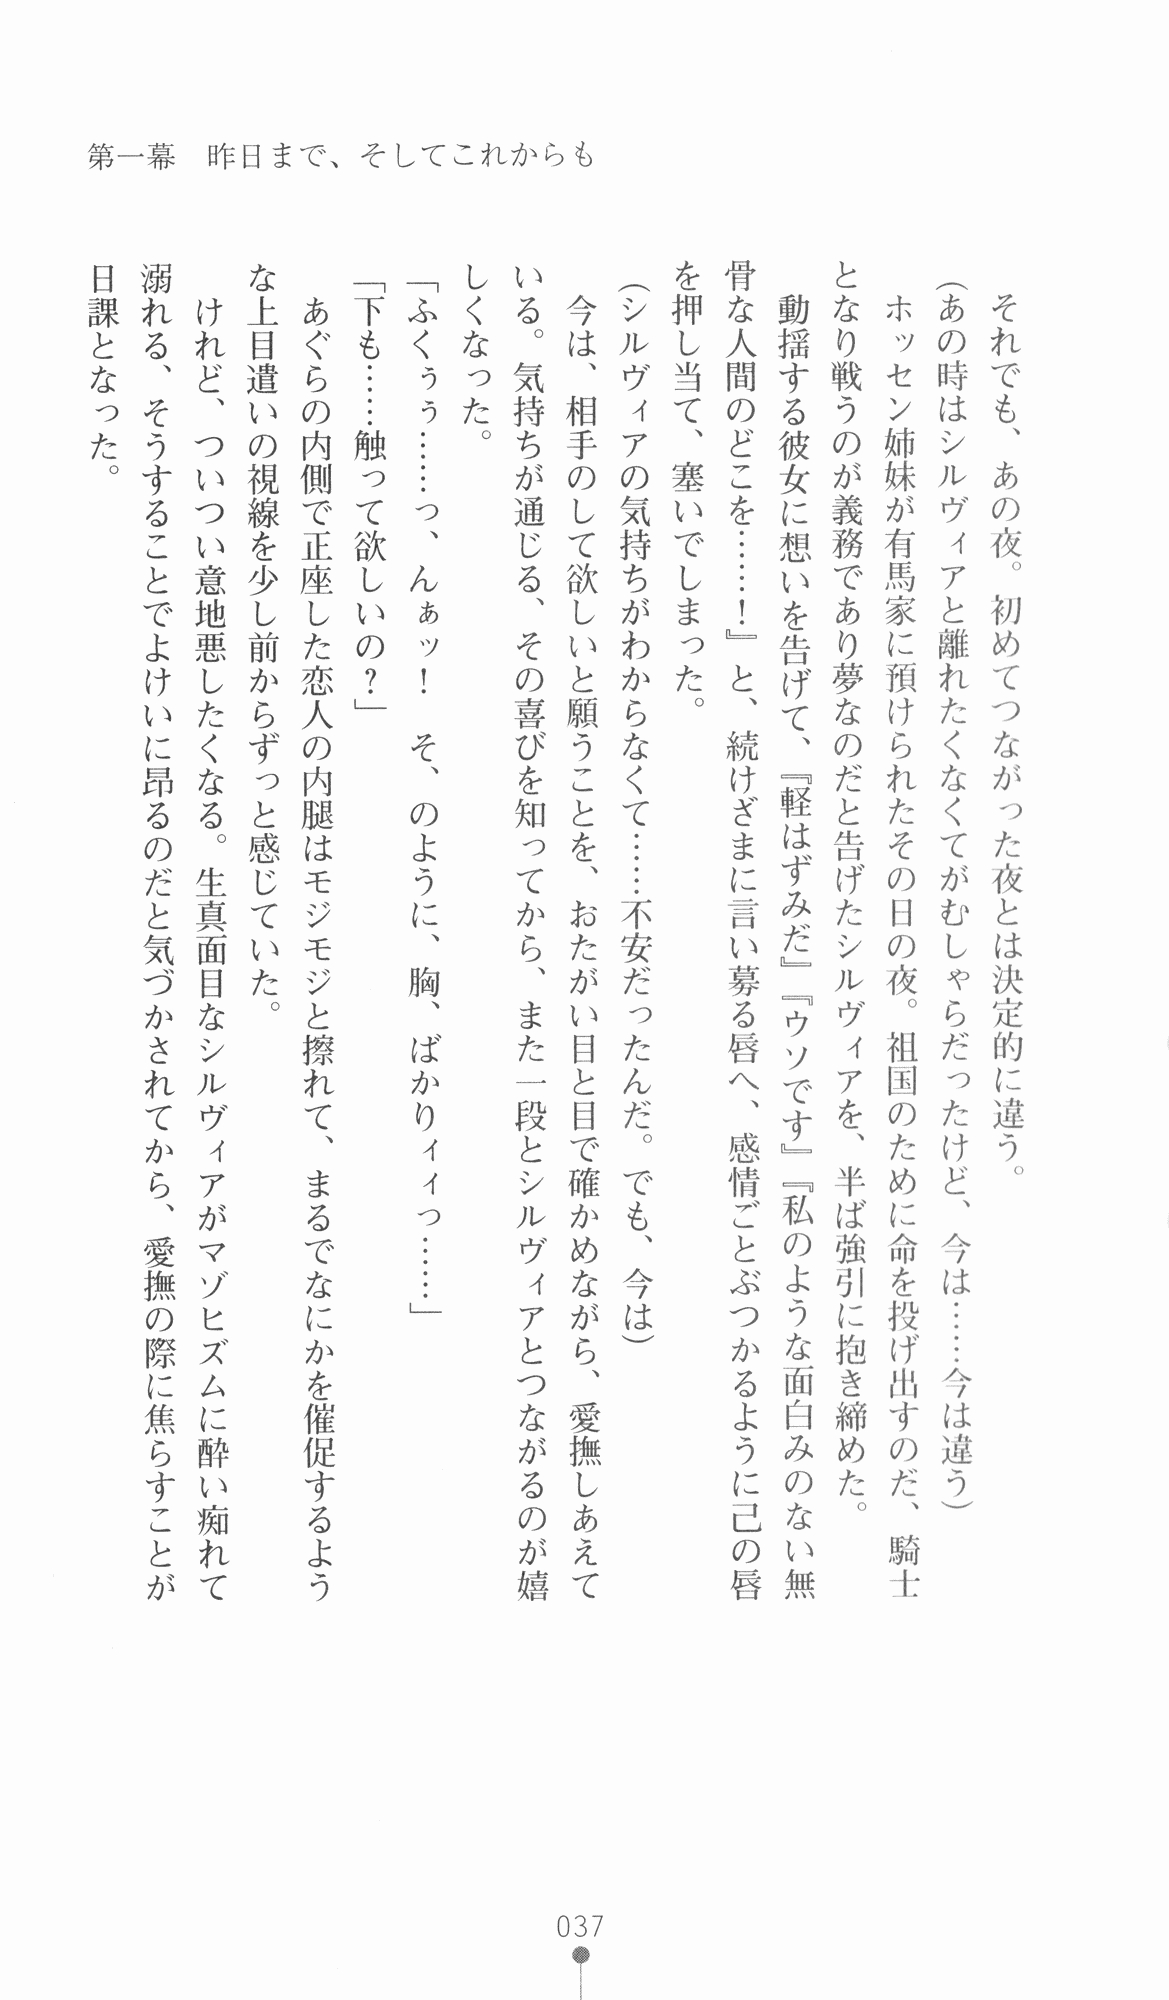 [Utsusemi × Yoshi Hyuma, Komori Kei] Princess Lover! Sylvia van Hossen no Koiji 2 (Original by Ricotta) 60